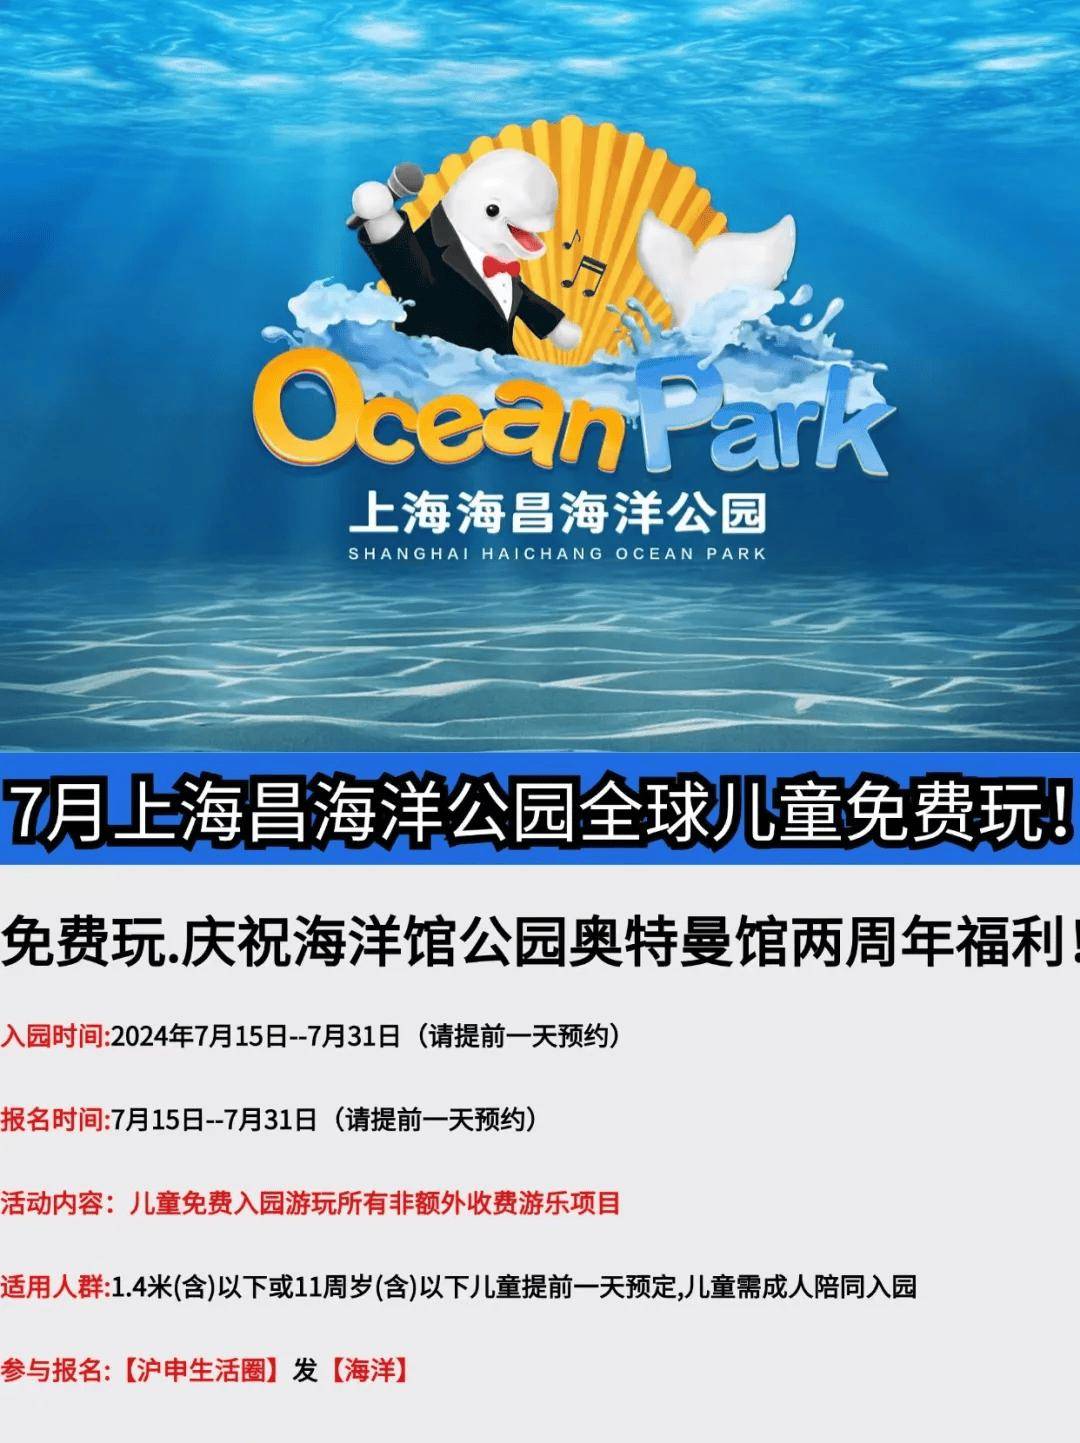 上海海昌海洋公园免费玩,持续到730日!